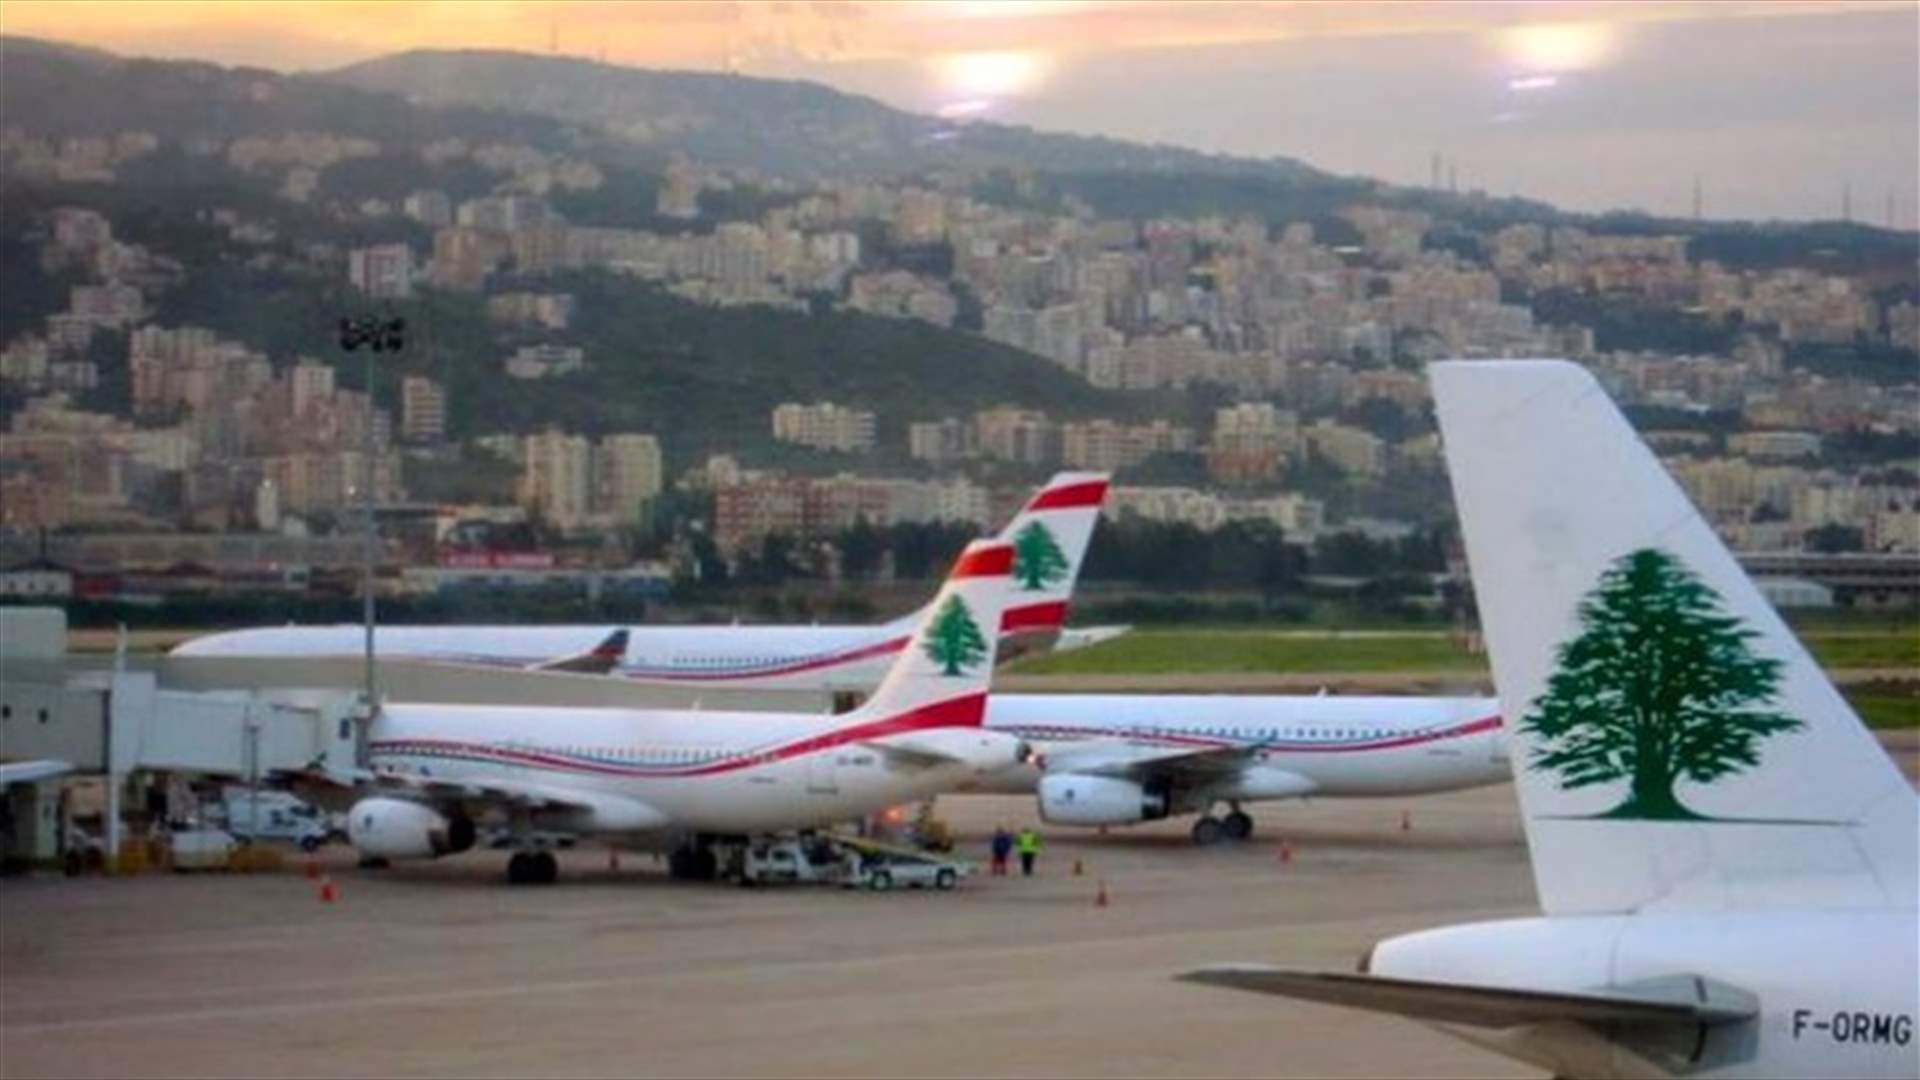 تعميم للمدير العام للطيران المدني في مطار بيروت حول الاجراءات المتعلقة بالقادمين الى لبنان